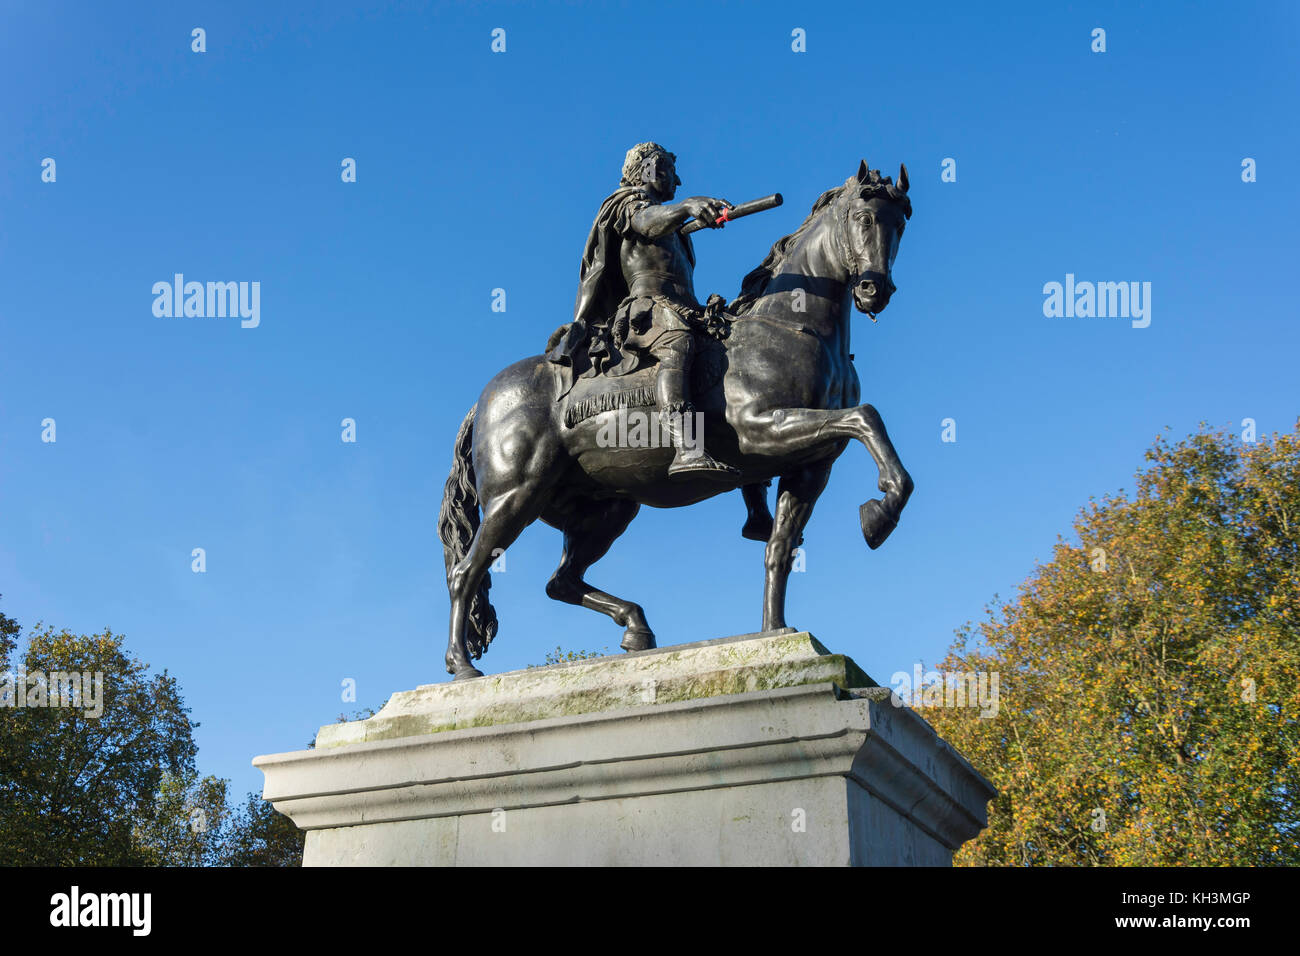 Statue équestre du roi William III sur Queen Square, Vieille Ville, Bristol, Angleterre, Royaume-Uni Banque D'Images